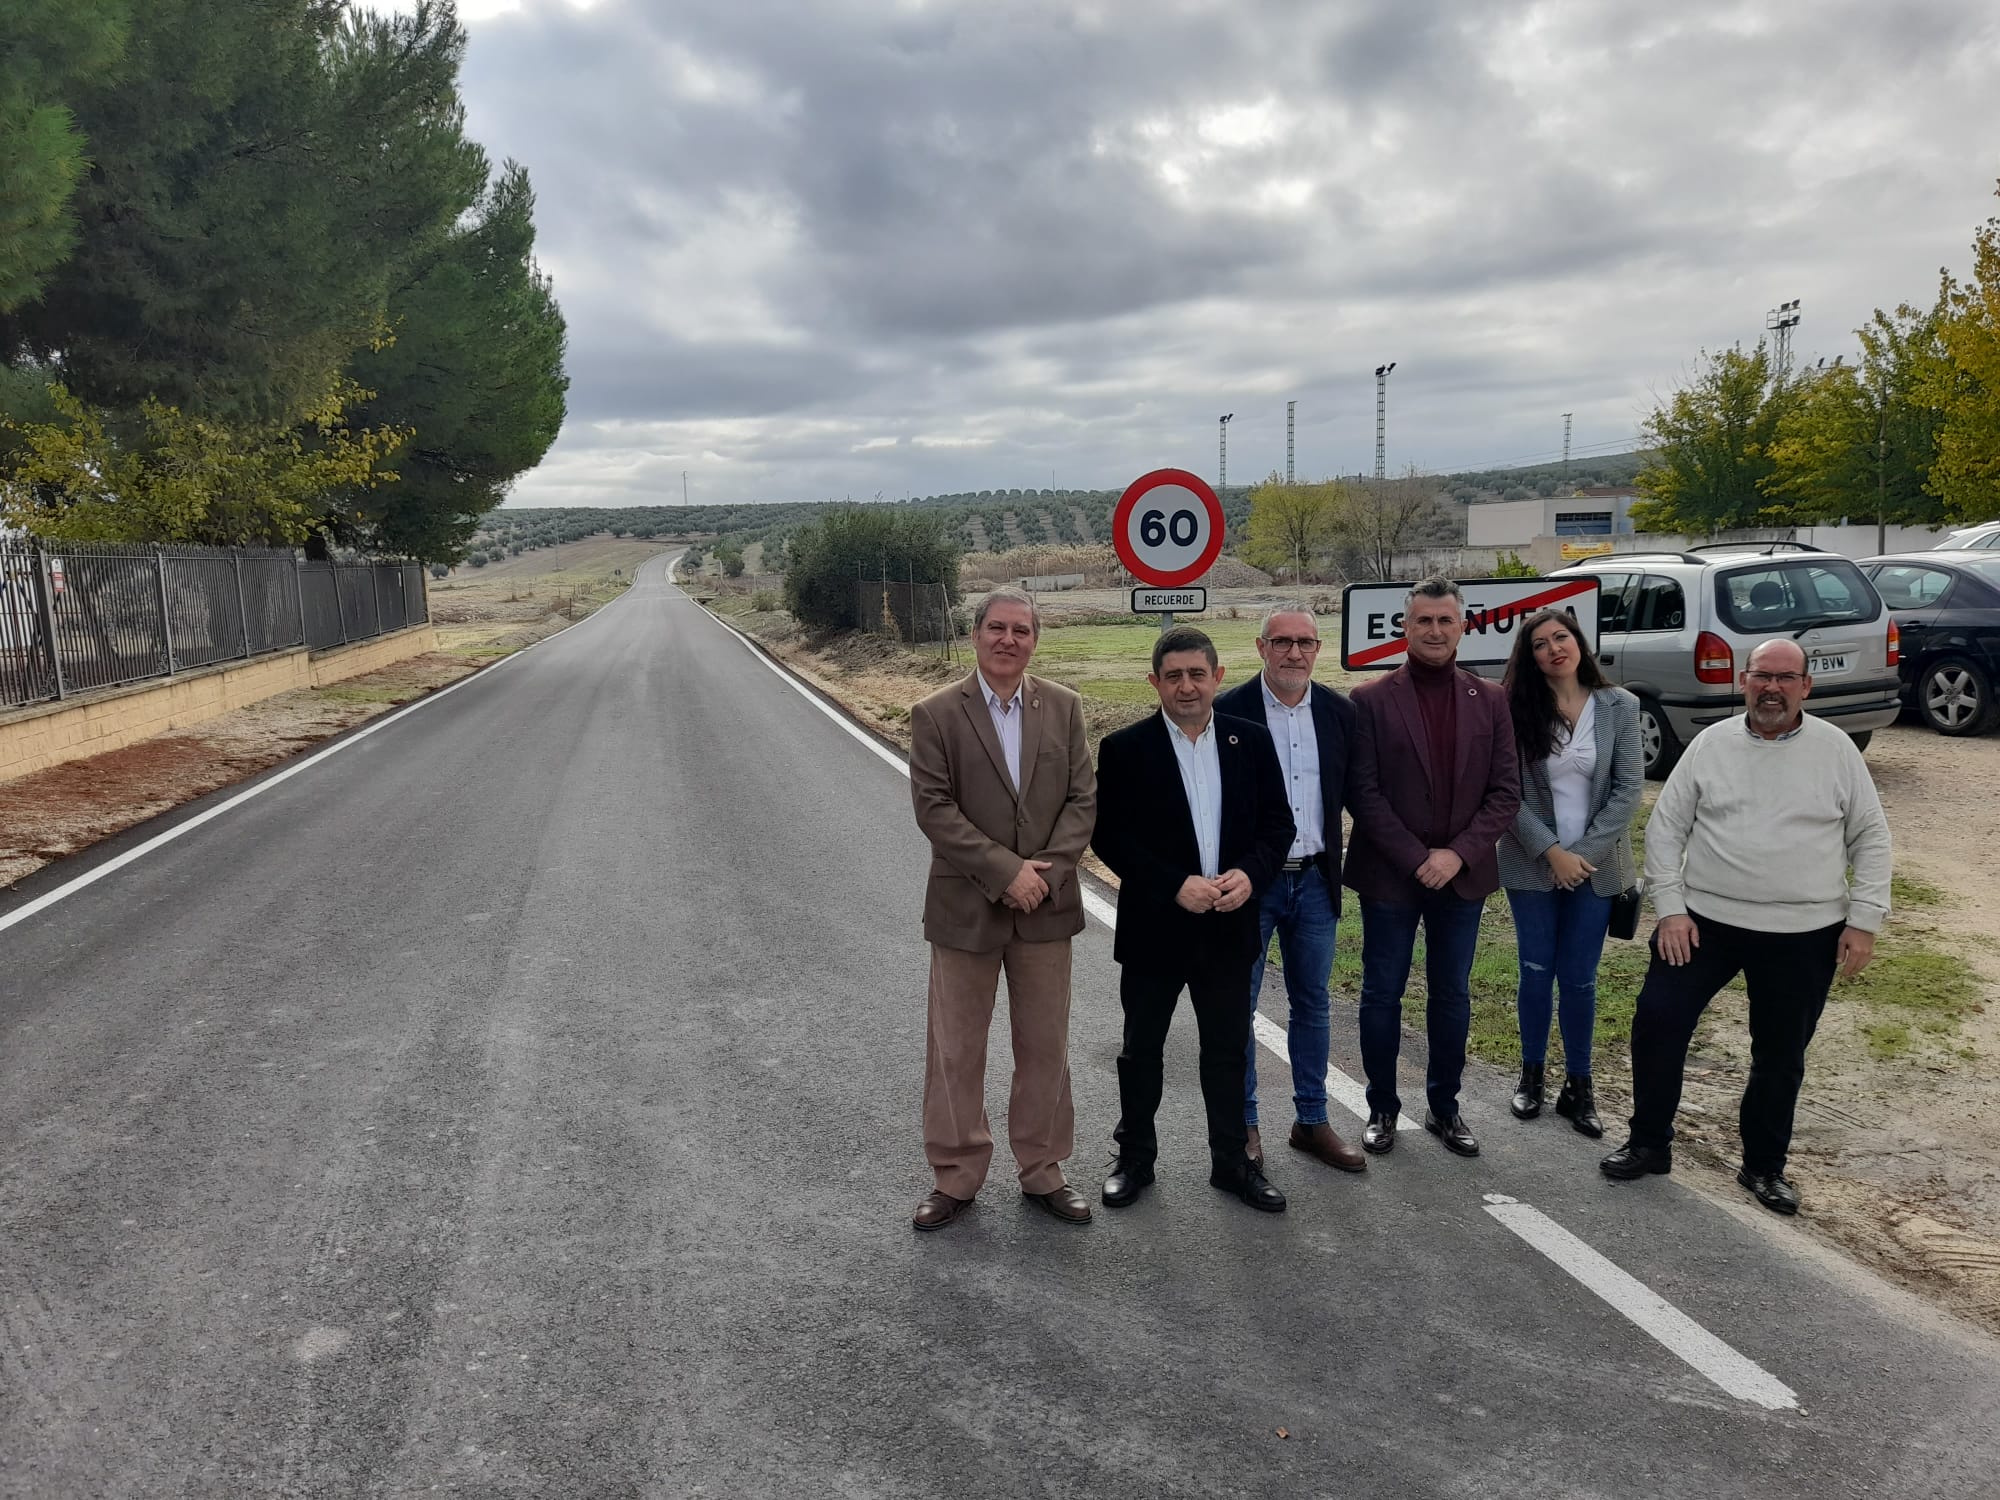 Diputación finaliza la adecuación de la carretera entre Villardompardo y Escañuela, a la que destina casi 2 millones